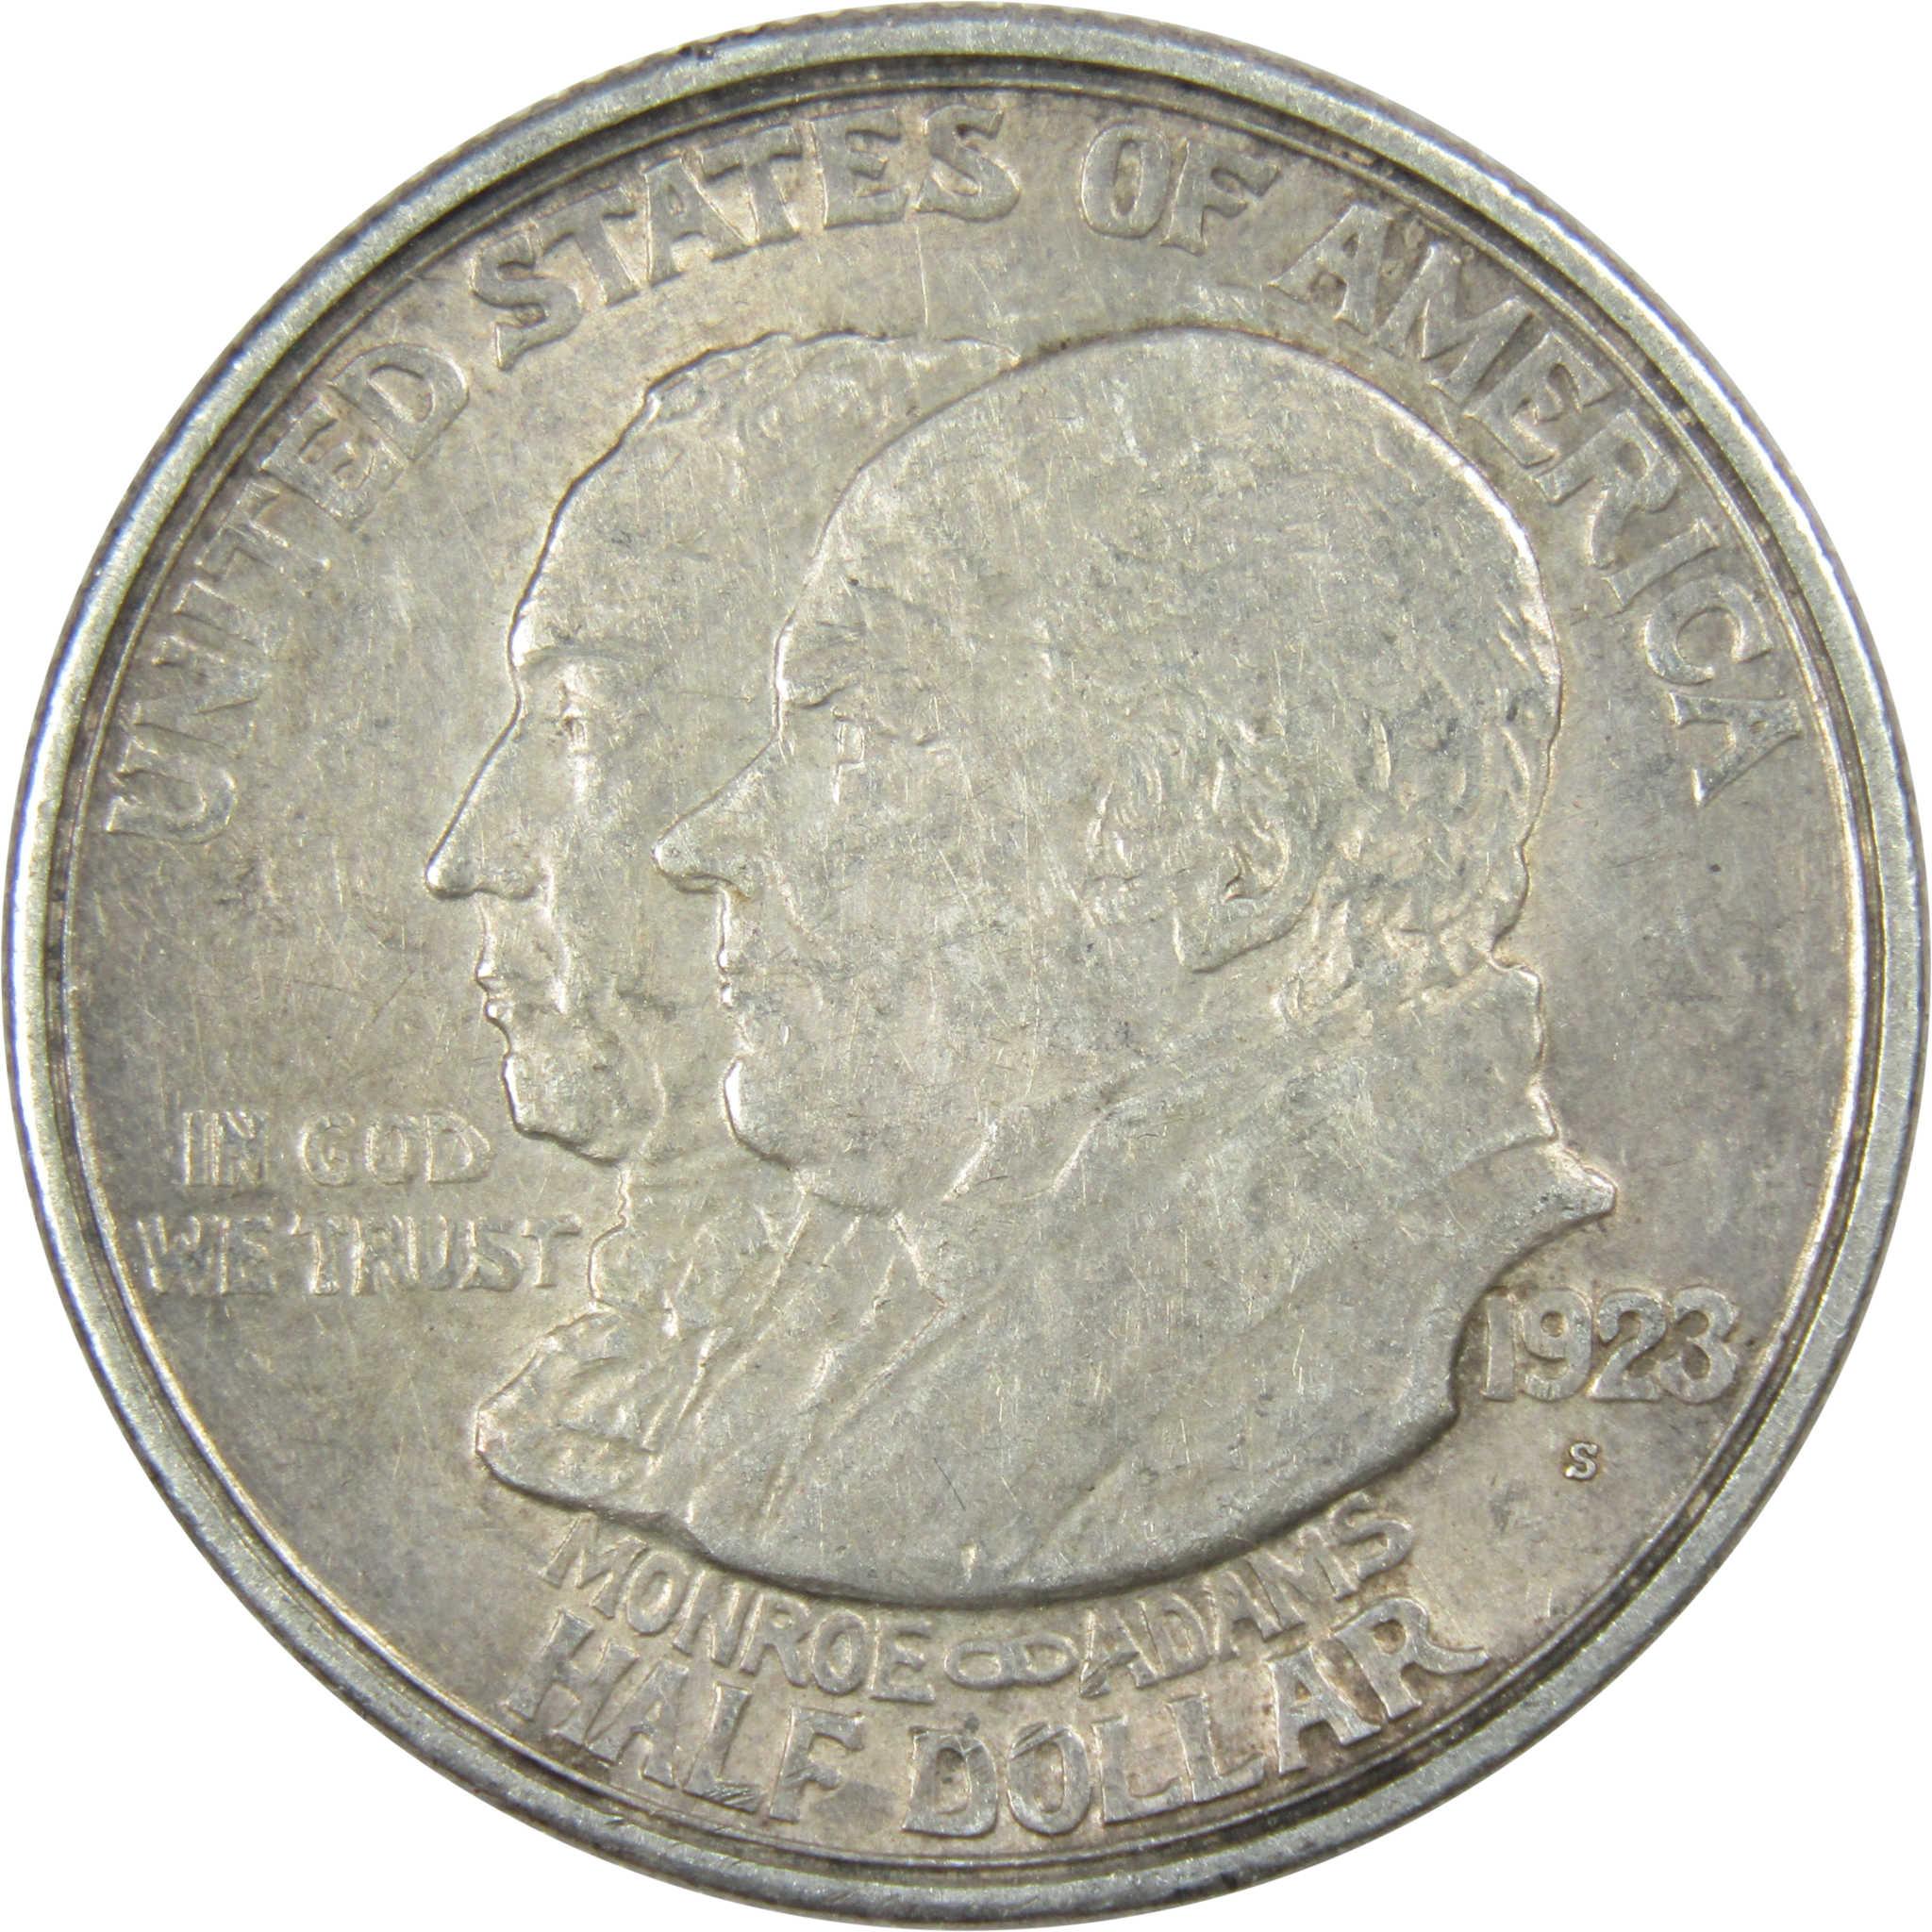 Monroe Doctrine Centennial Commemorative Half Dollar 1923 S 90% Silver 50c Coin